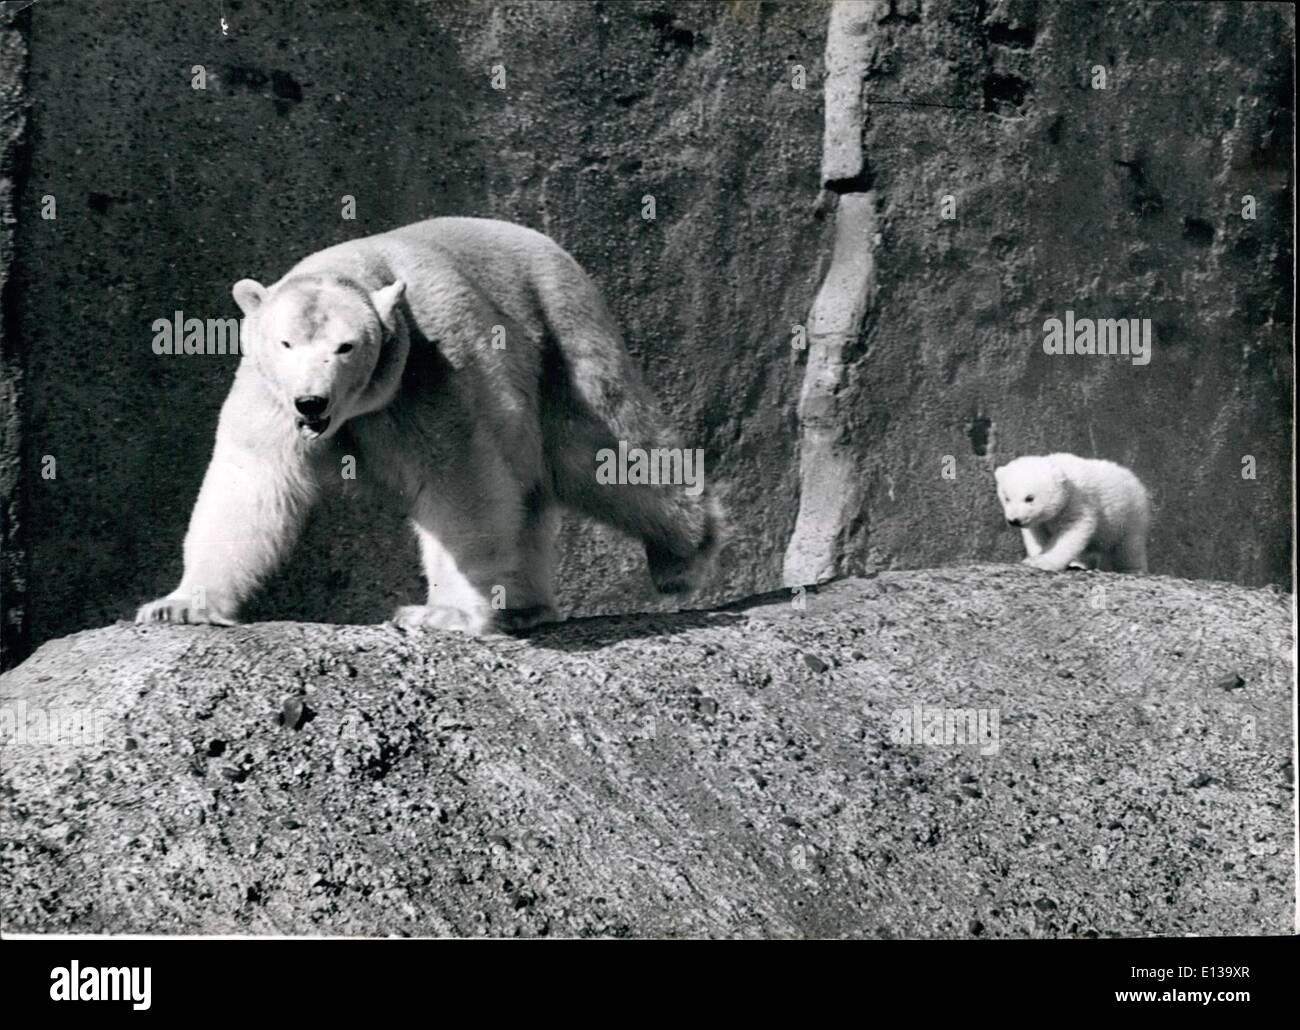 29. Februar 2012 - folgen meine Führungskraft - Brumas eine schöne Zeit mit Mutter Baby polar hat kommt in den Sonnenschein.: Brumas der Baby-Eisbär - stolz der Londoner Zoo - hat eine feine Zeit nach Mutter IVY herum - wenn der Nachwuchs im frühlingshaften Sonnenschein heute heraus kam. Stockfoto